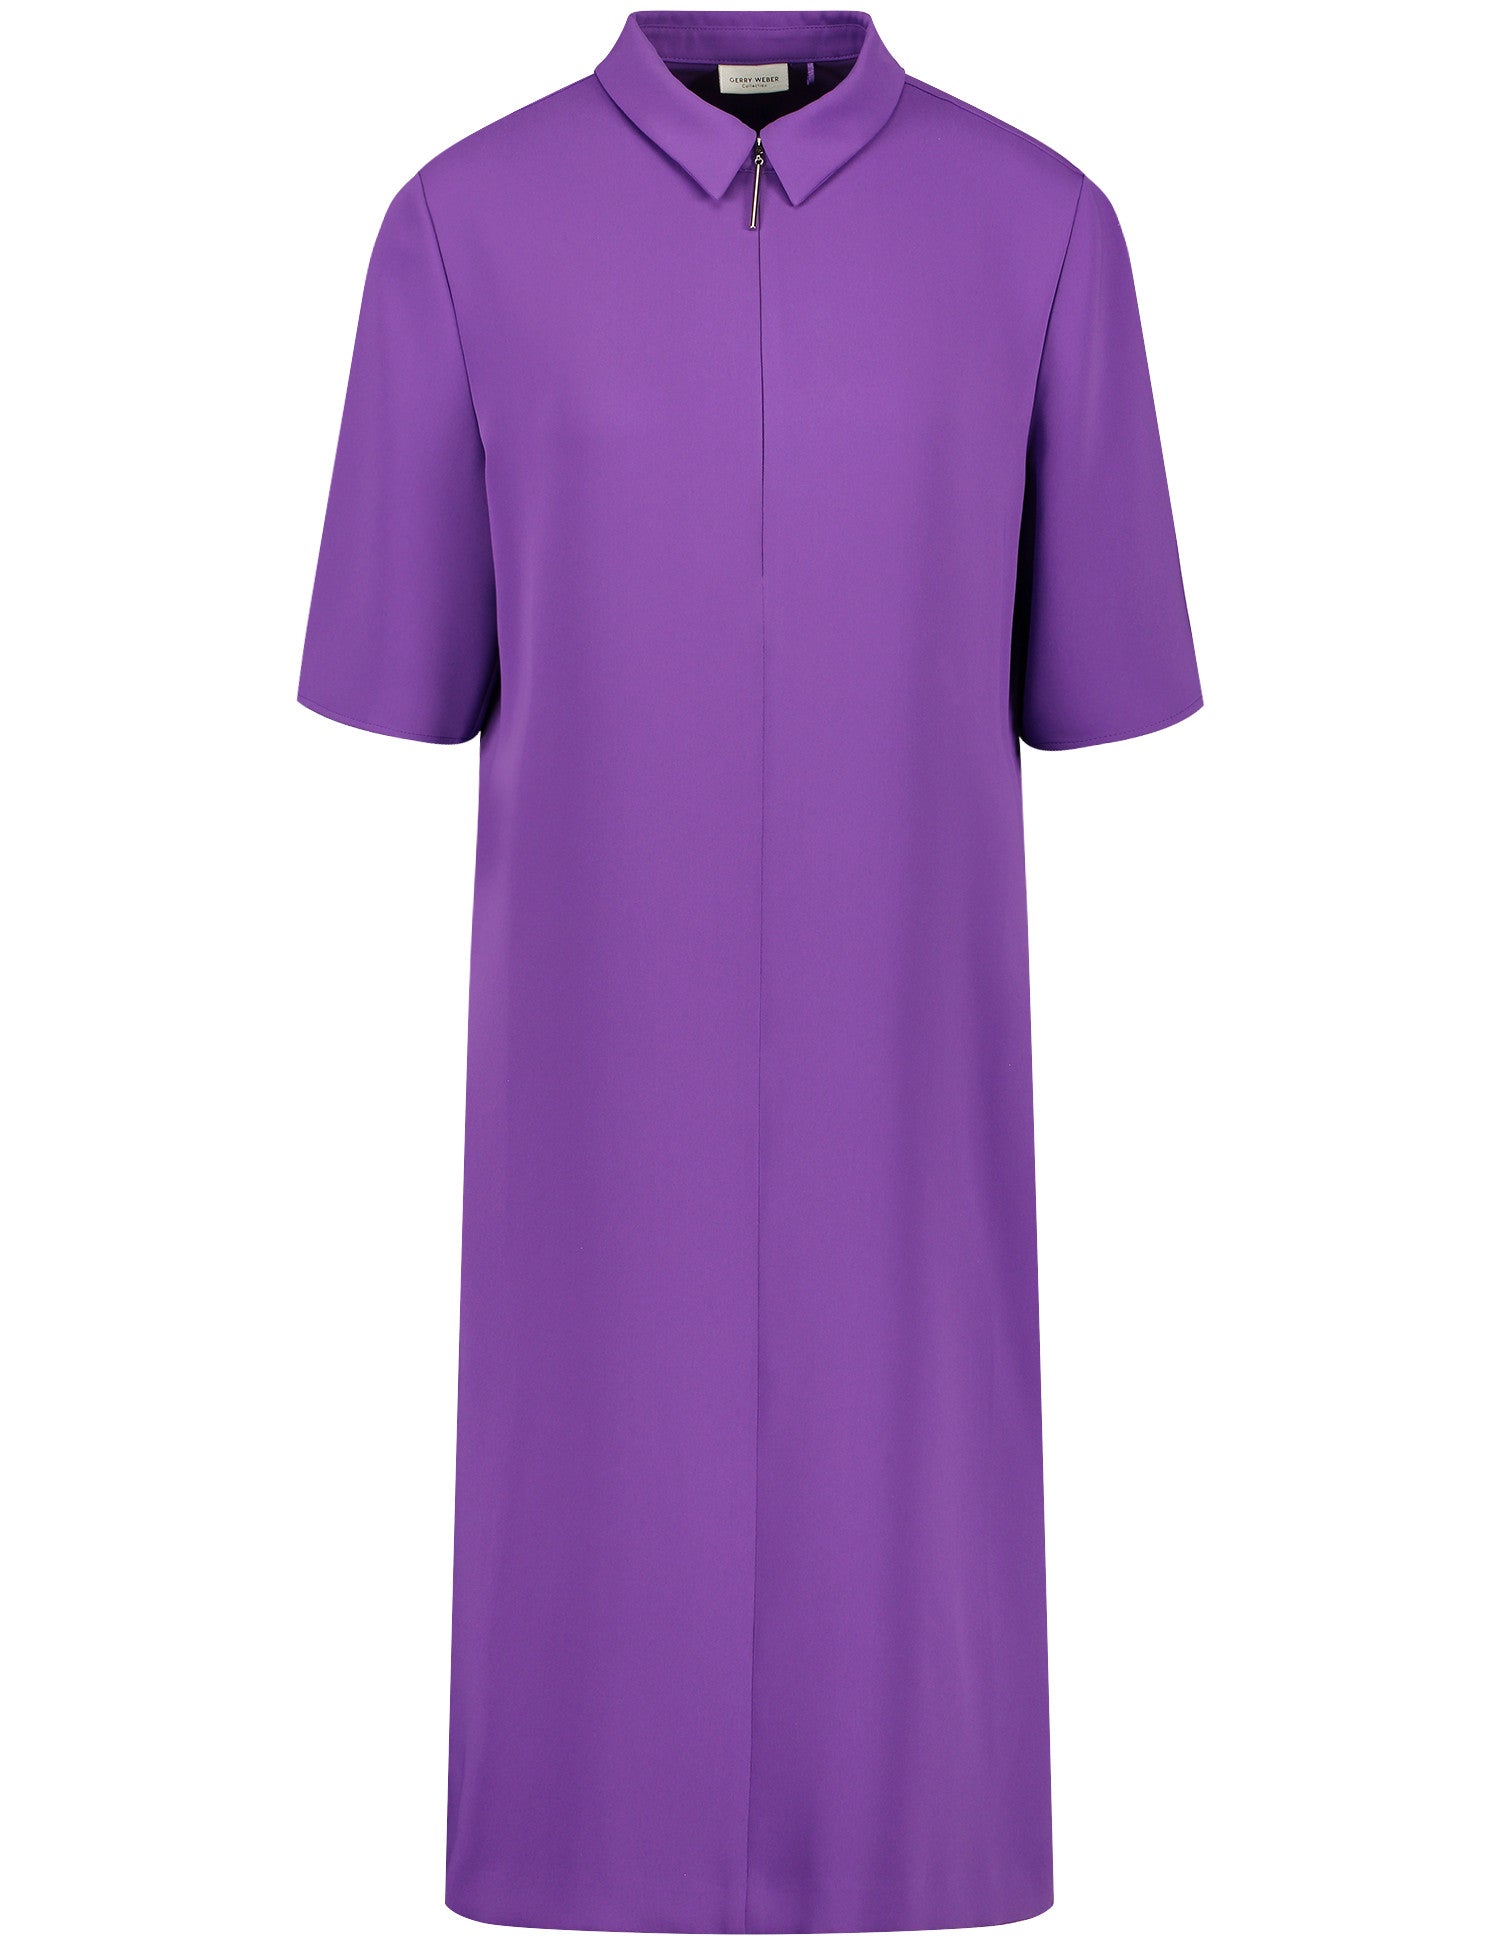 Gerry Weber - Purple Zip Dress